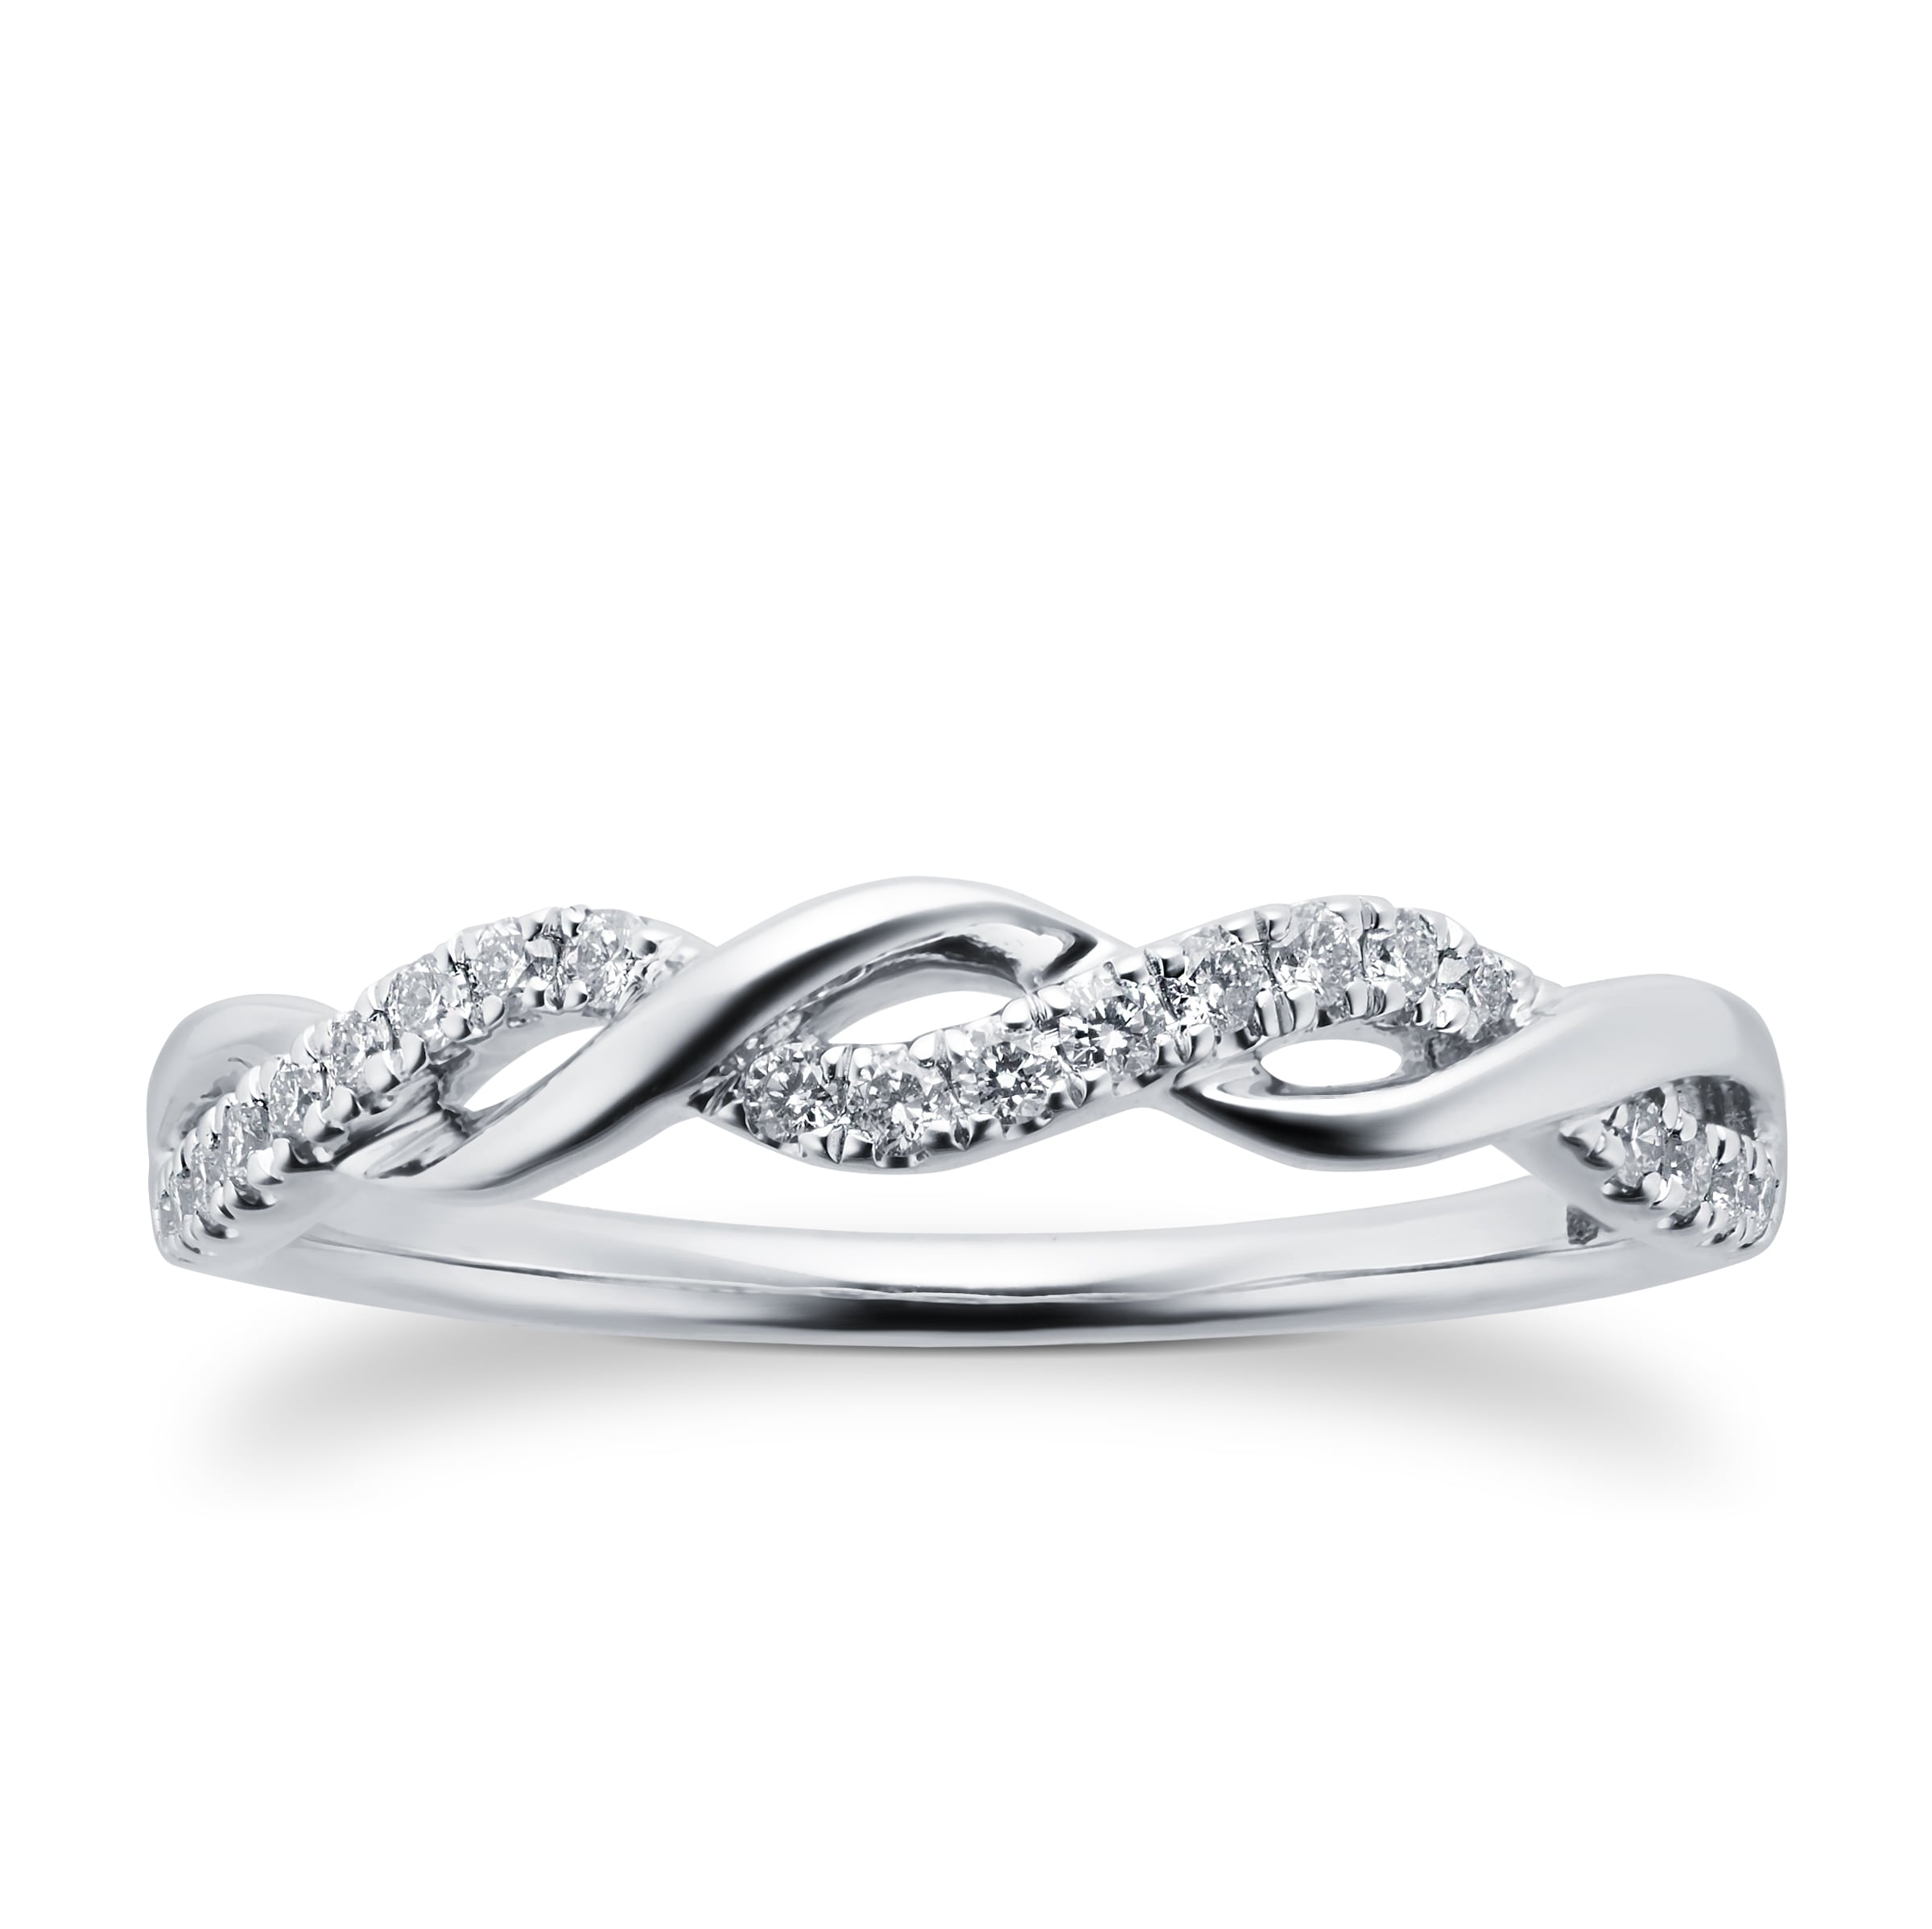 Buy Eternity Designer Diamond Ring Online